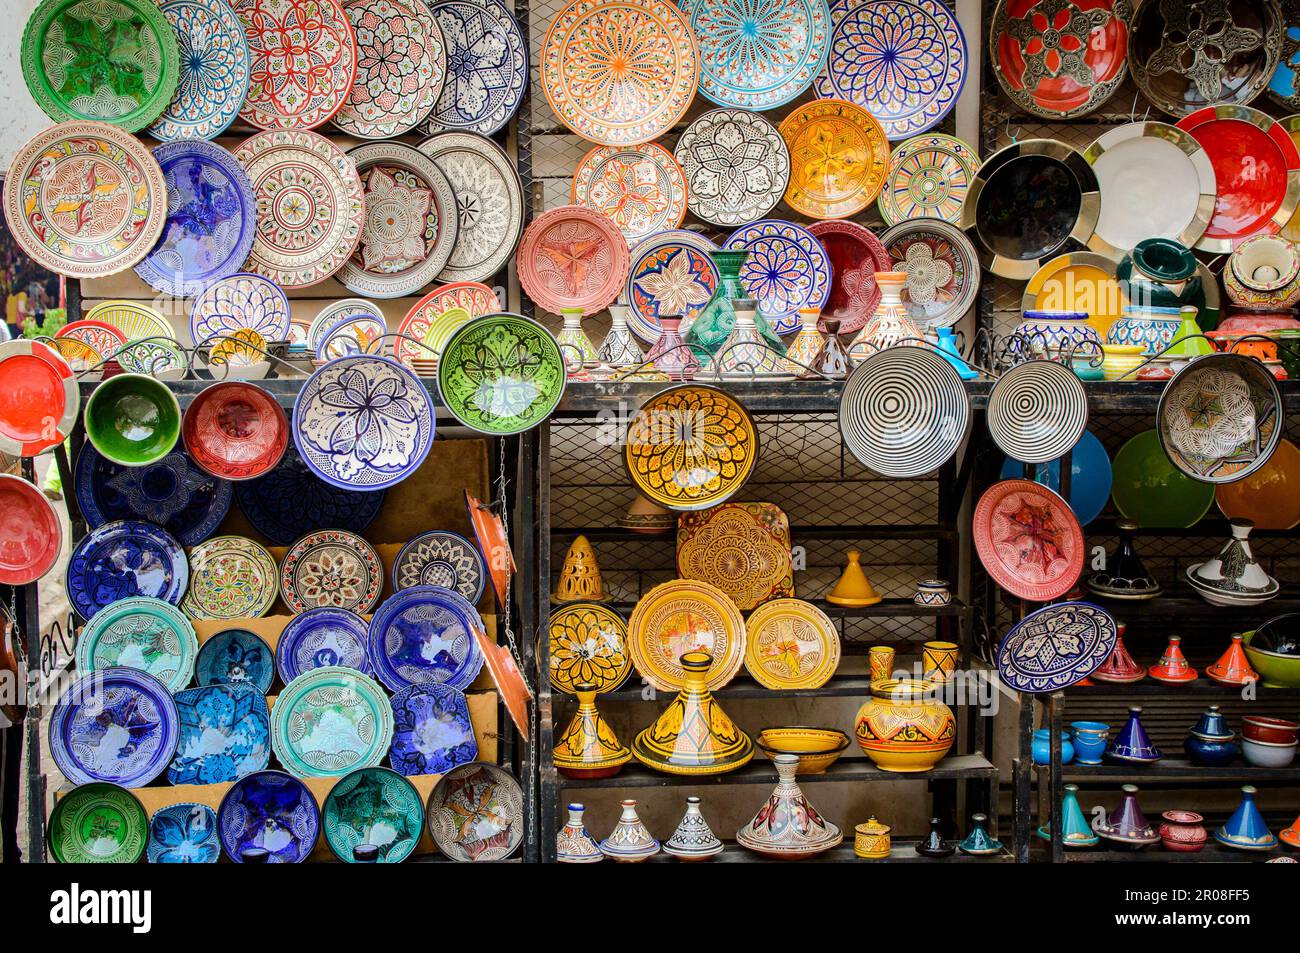 Piatti e pentole in ceramica colorati esposti nei souk della medina di Marrakech del Marocco. Foto Stock